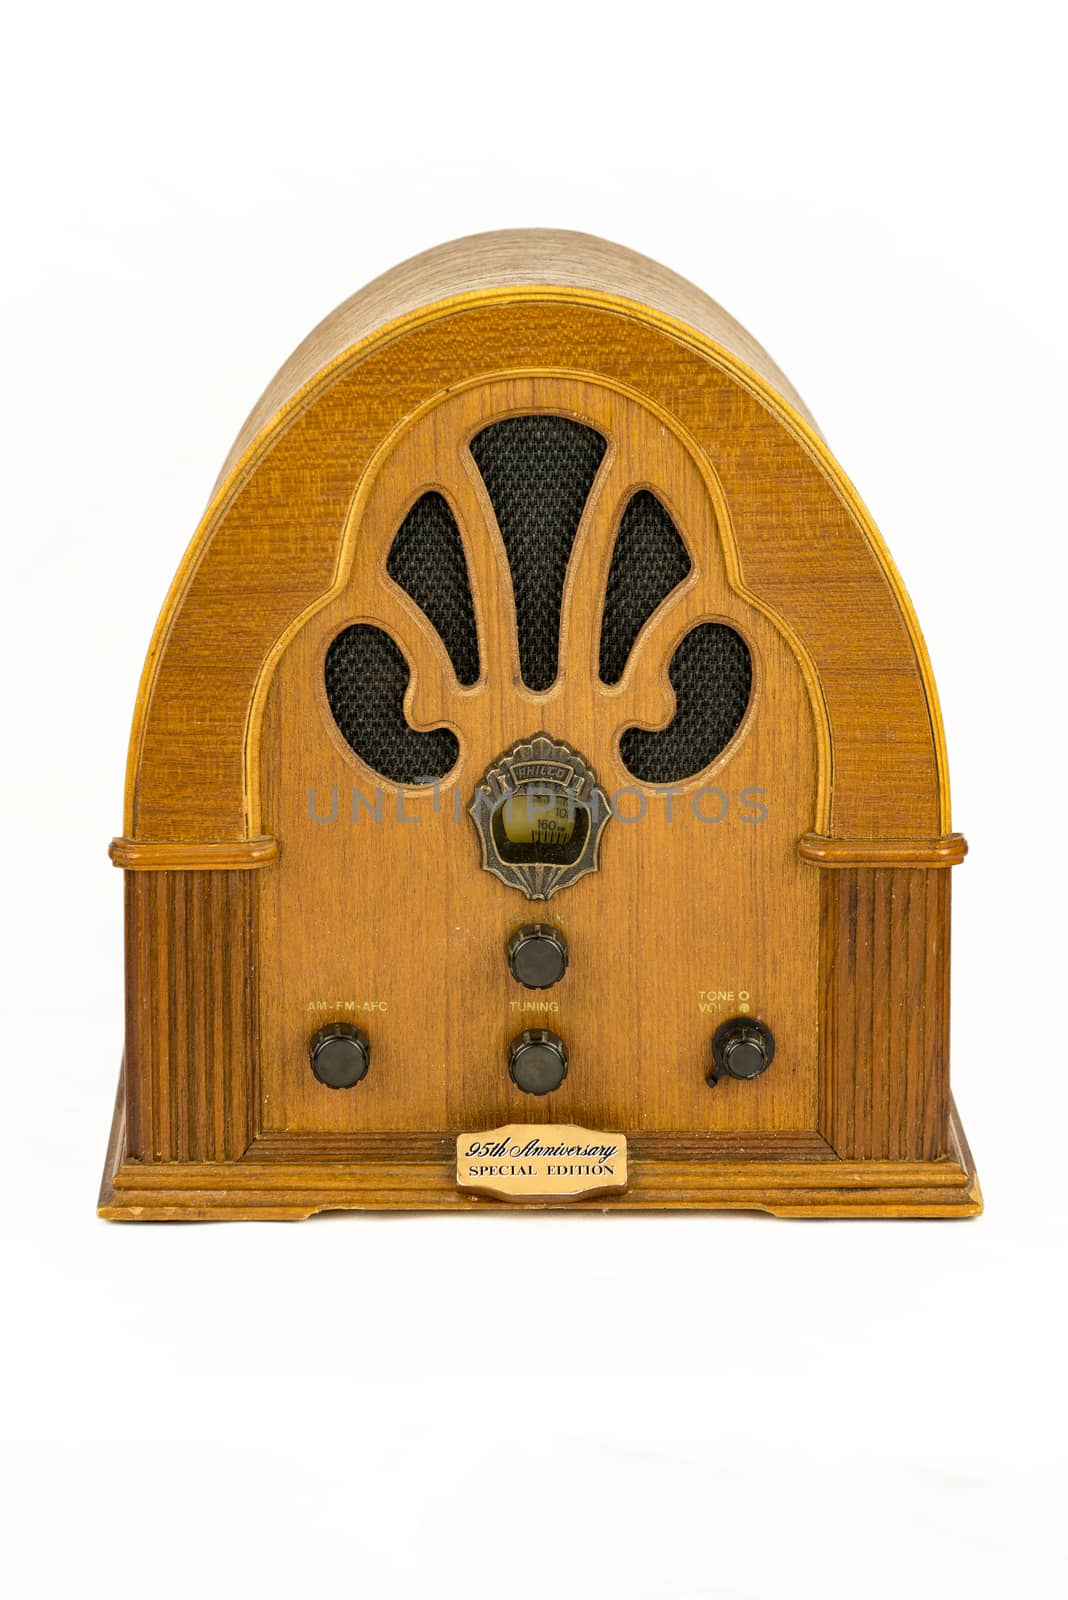 Vintage radio device  by edella